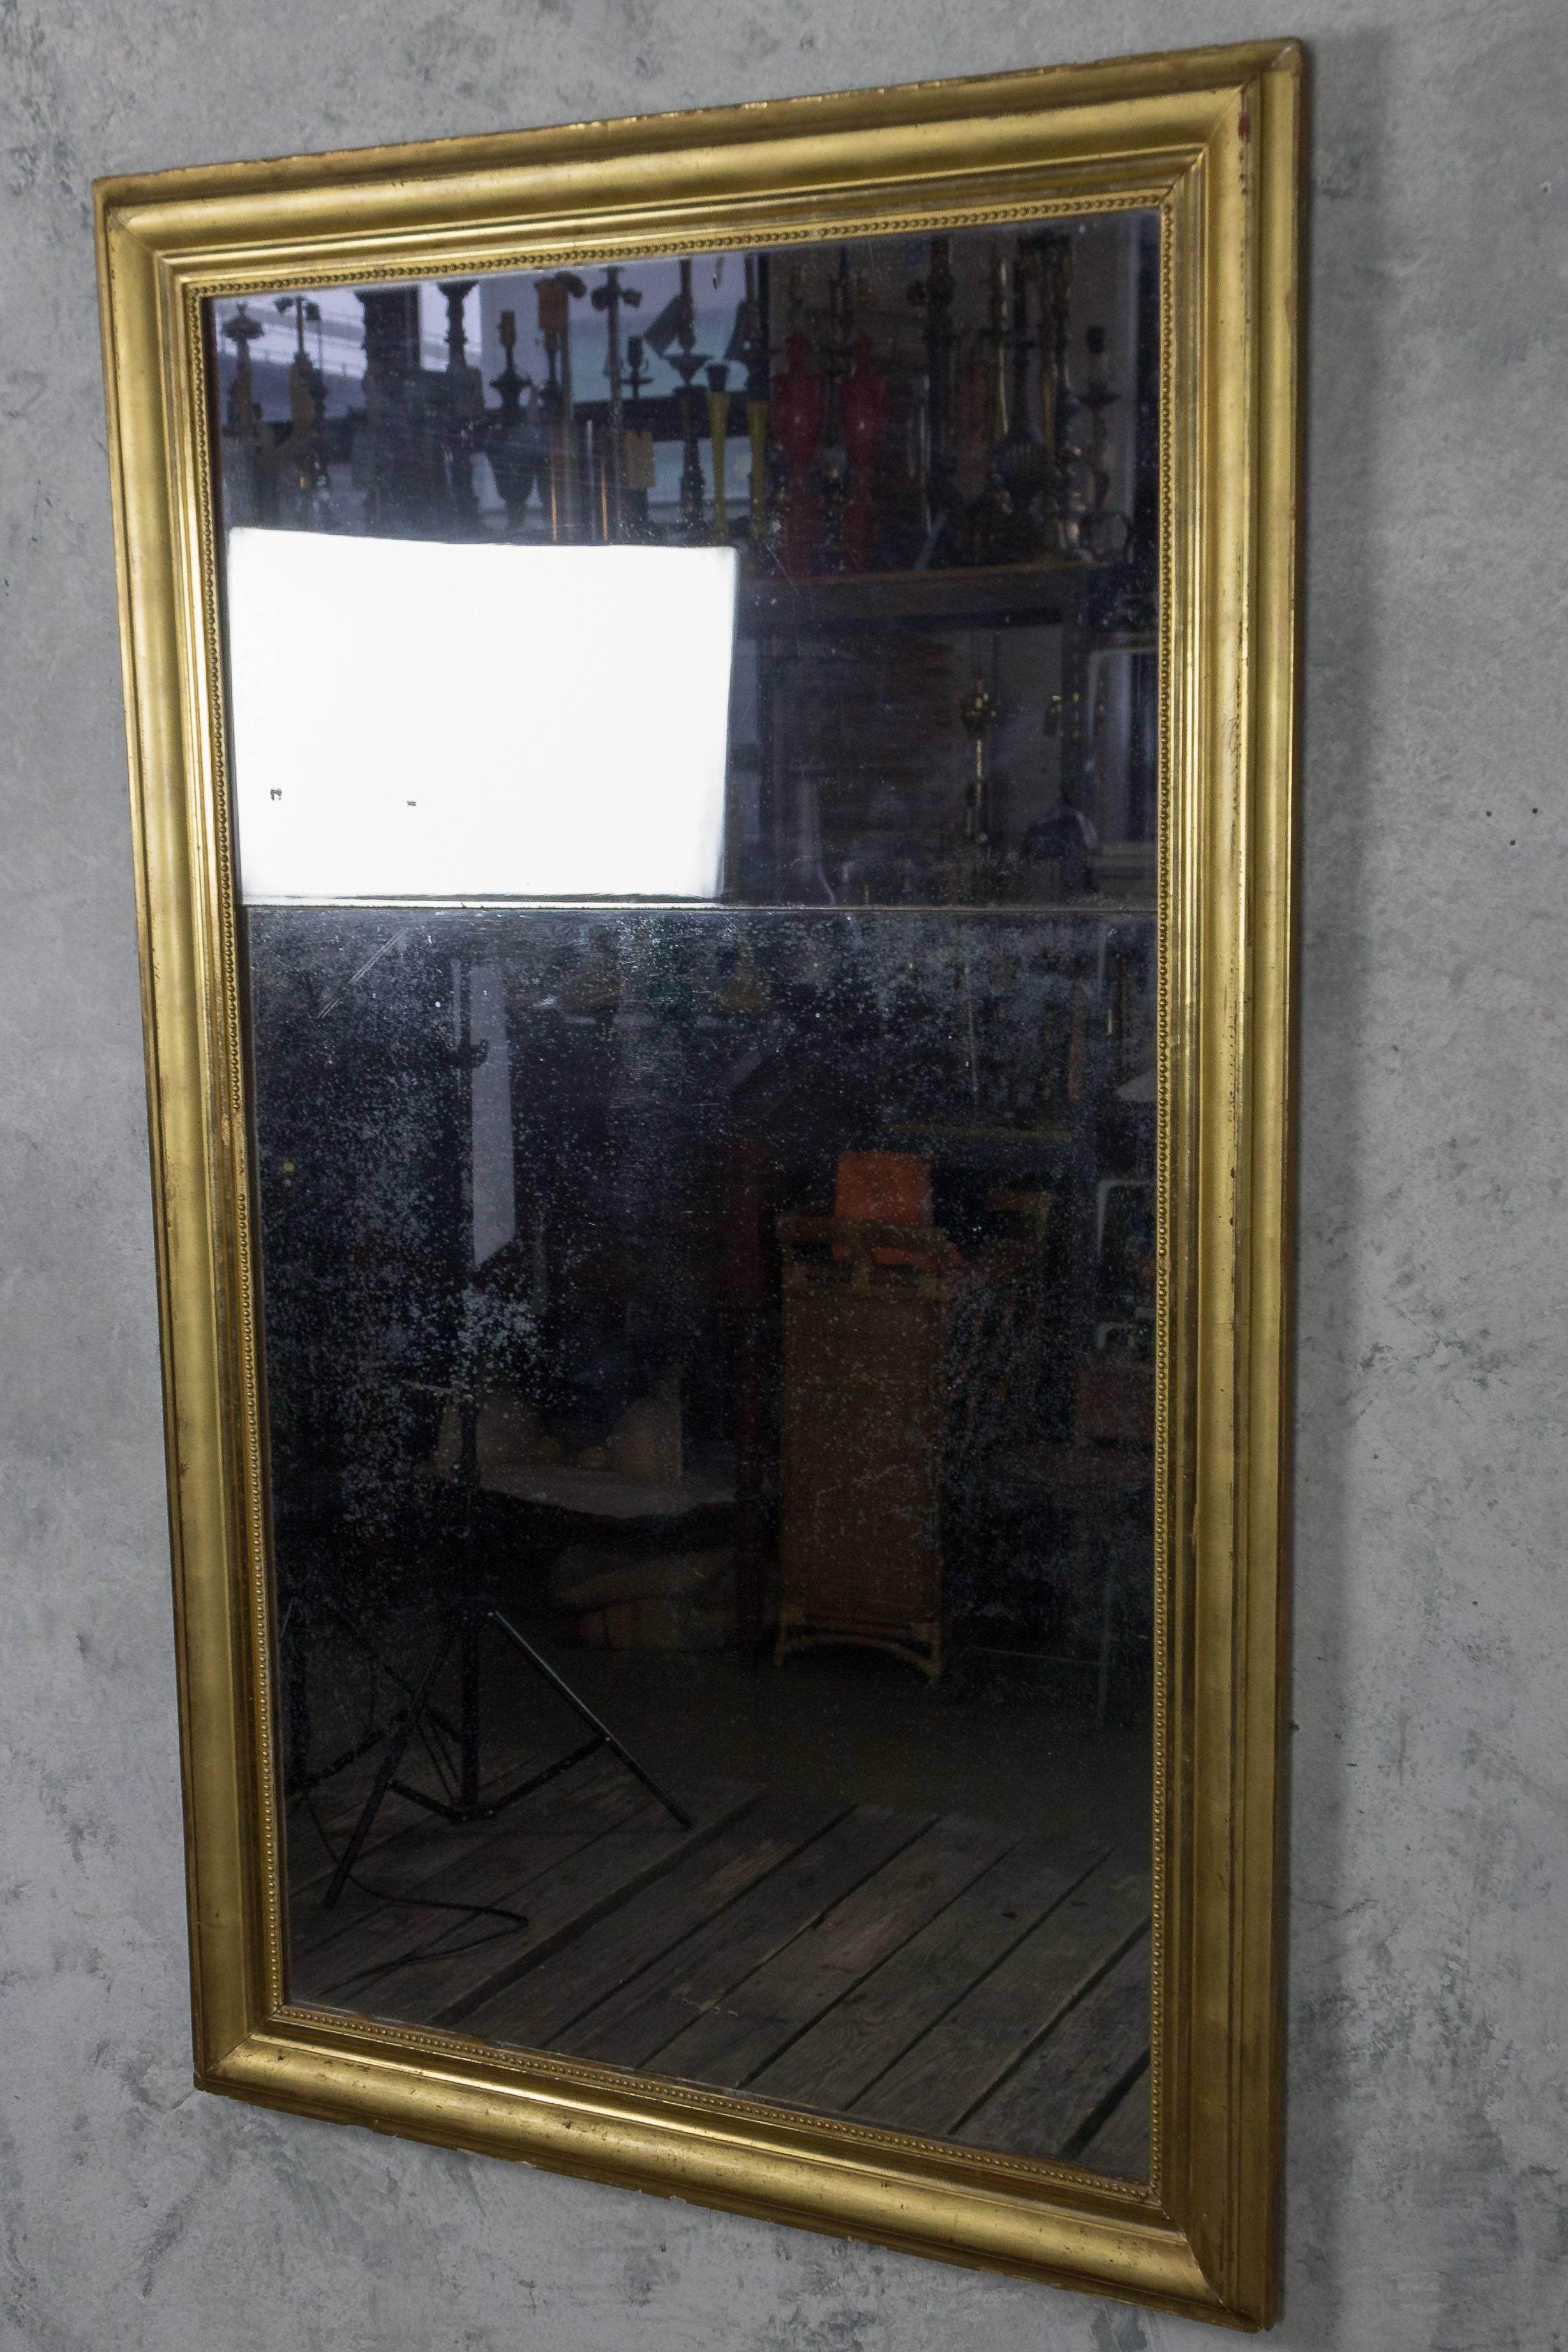 Großer französischer Quecksilberspiegel aus dem späten 18. Jahrhundert in einem vergoldeten Rahmen. Guter Zustand, altersgemäße Abnutzung.

Kennziffer: DM1203-33

Abmessungen: 63 